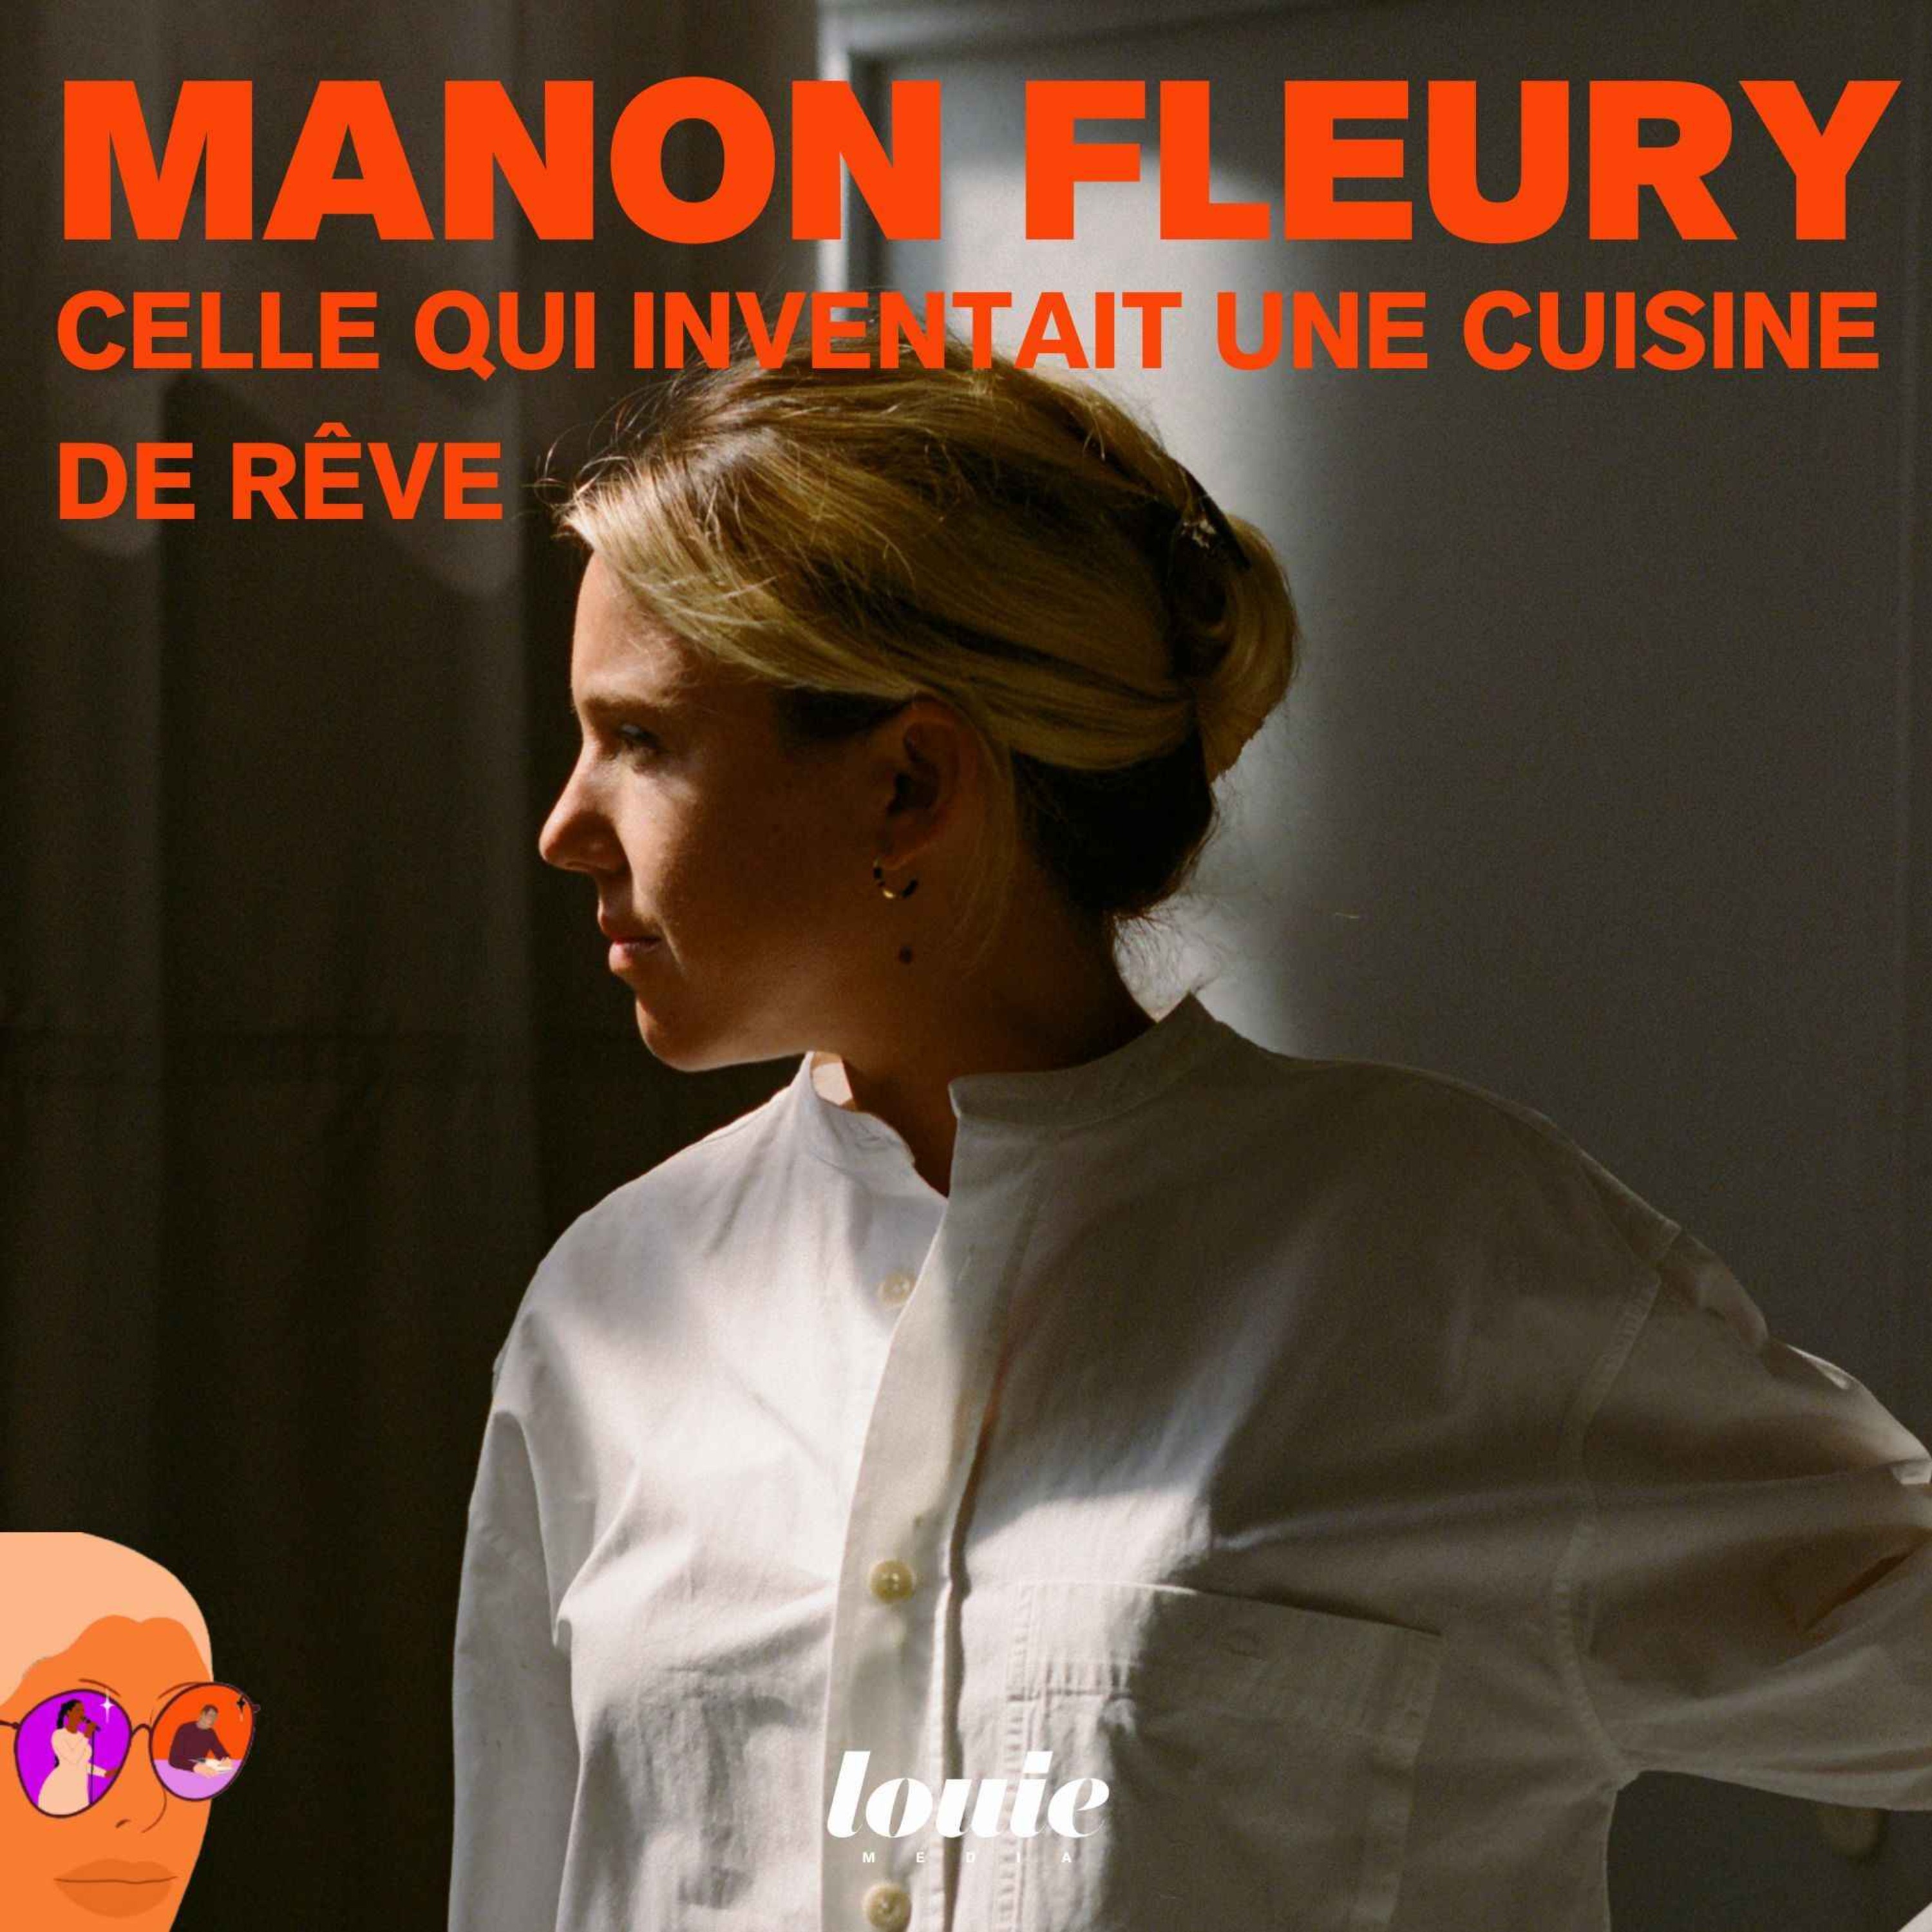 Manon Fleury, celle qui inventait une cuisine de rêve